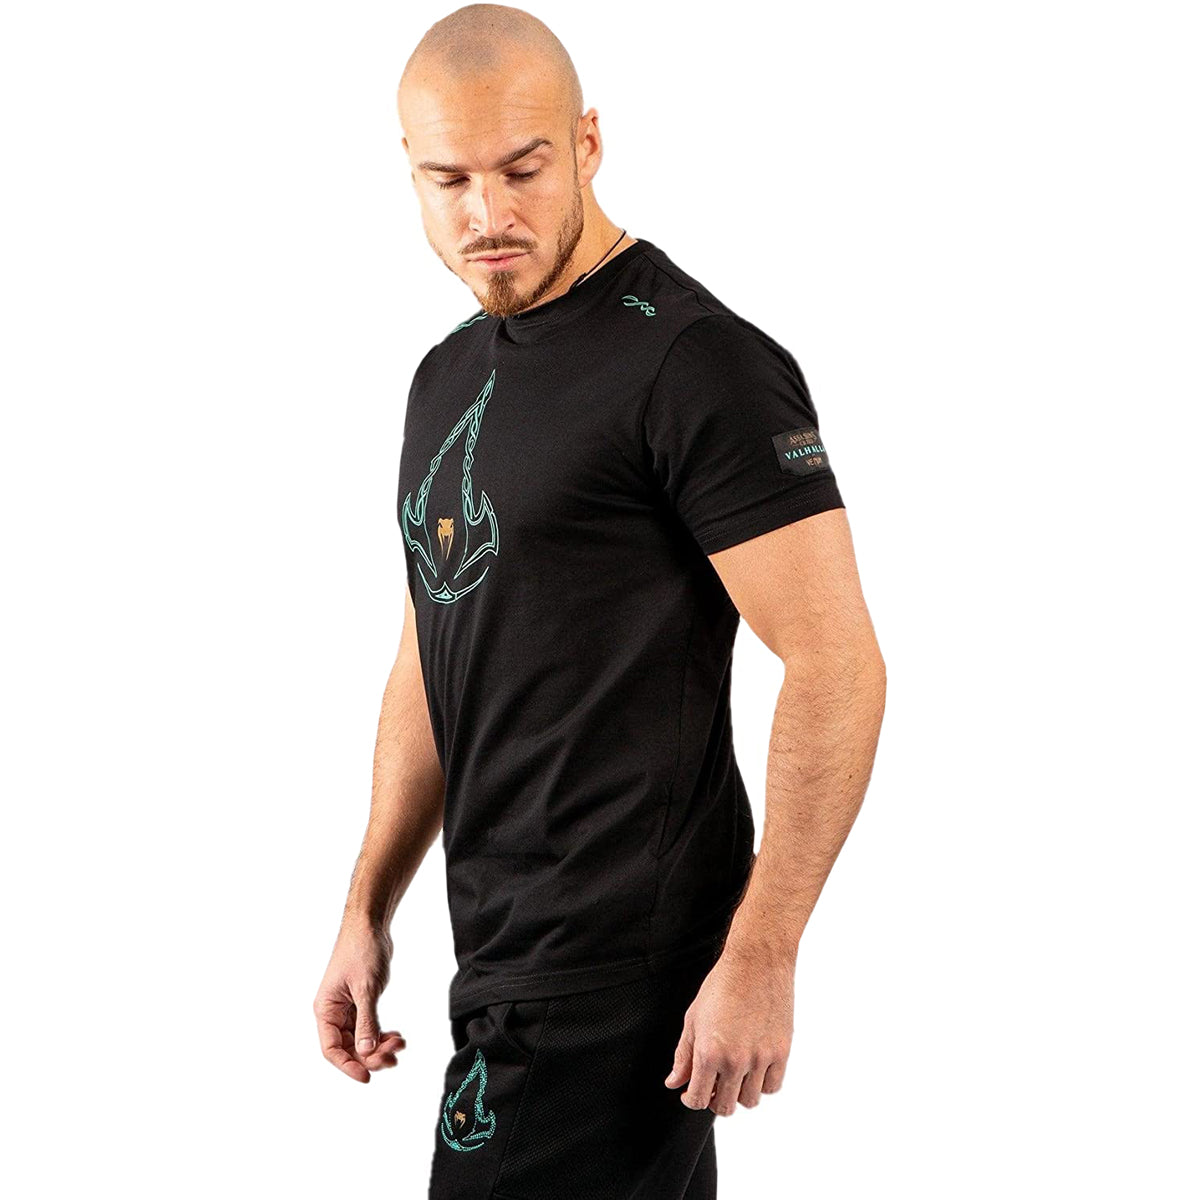 Venum Assassin's Creed T-Shirt - Black/Blue Venum